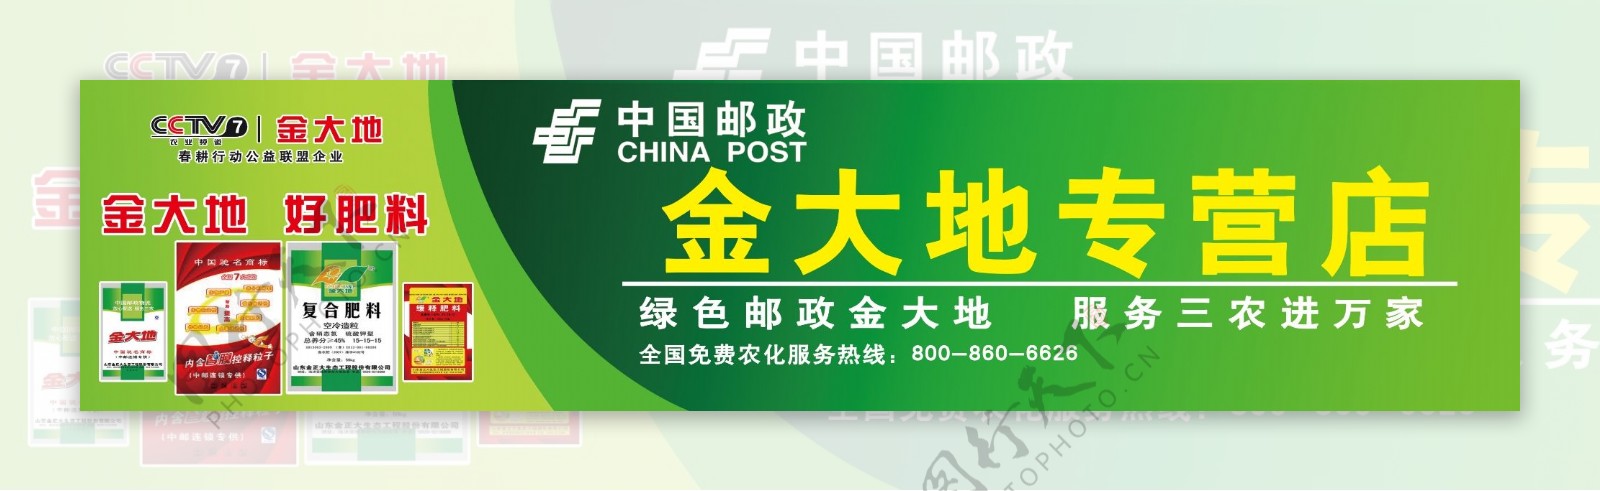 中国邮政金大地肥料图片